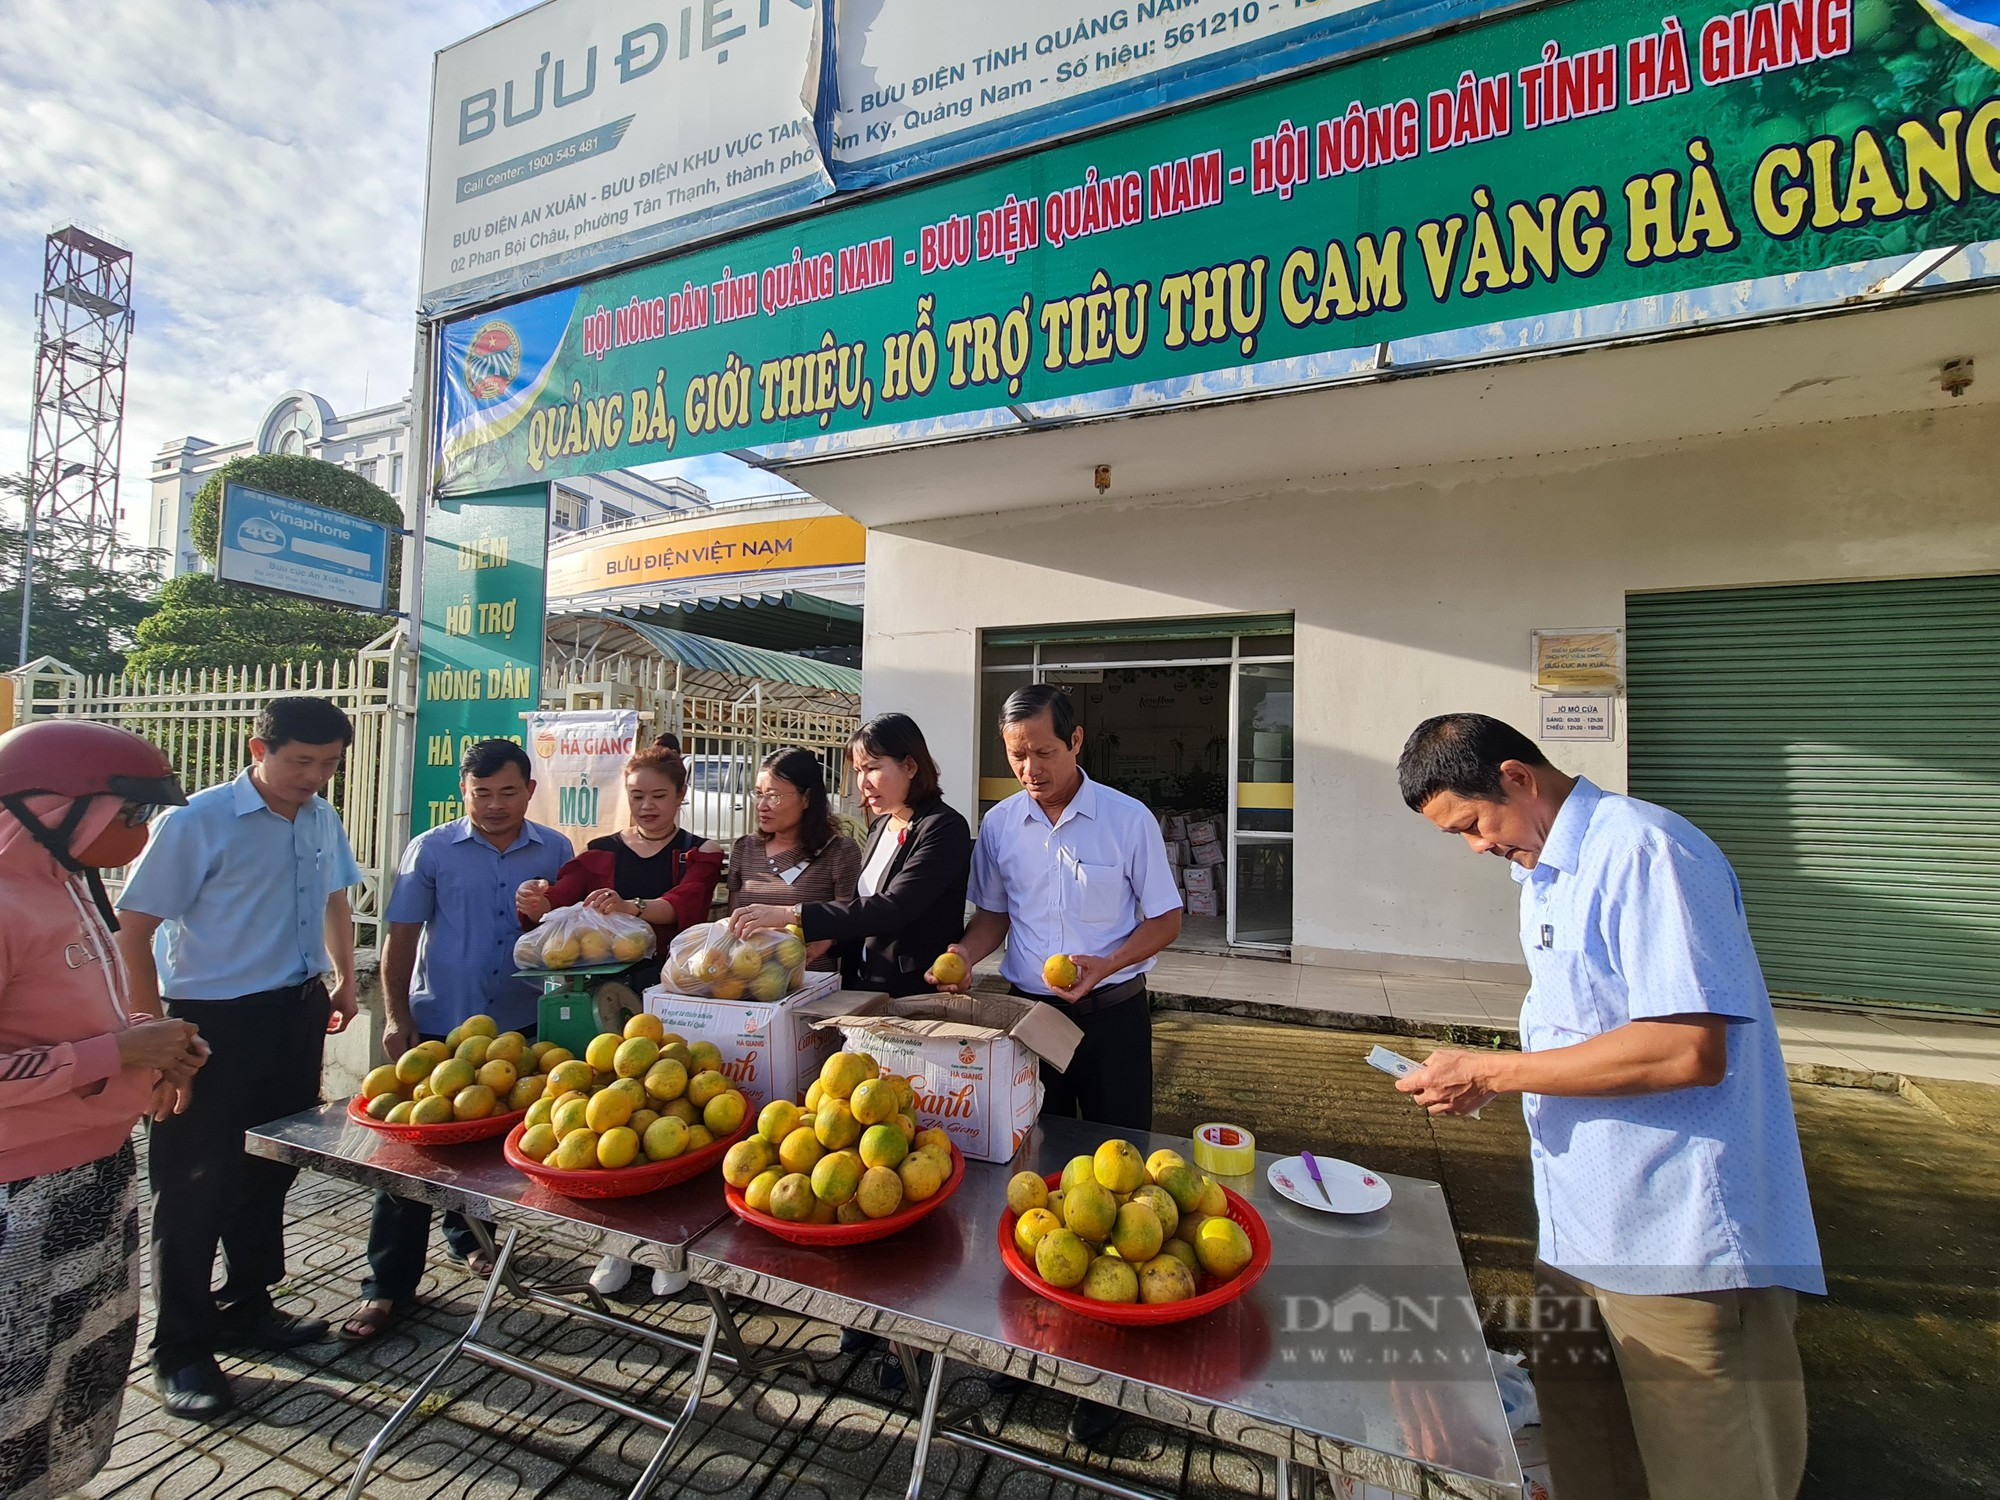 Hơn 100 cán bộ Hội Nông dân ở Quảng Nam được bồi dưỡng nghiệp vụ - Ảnh 4.